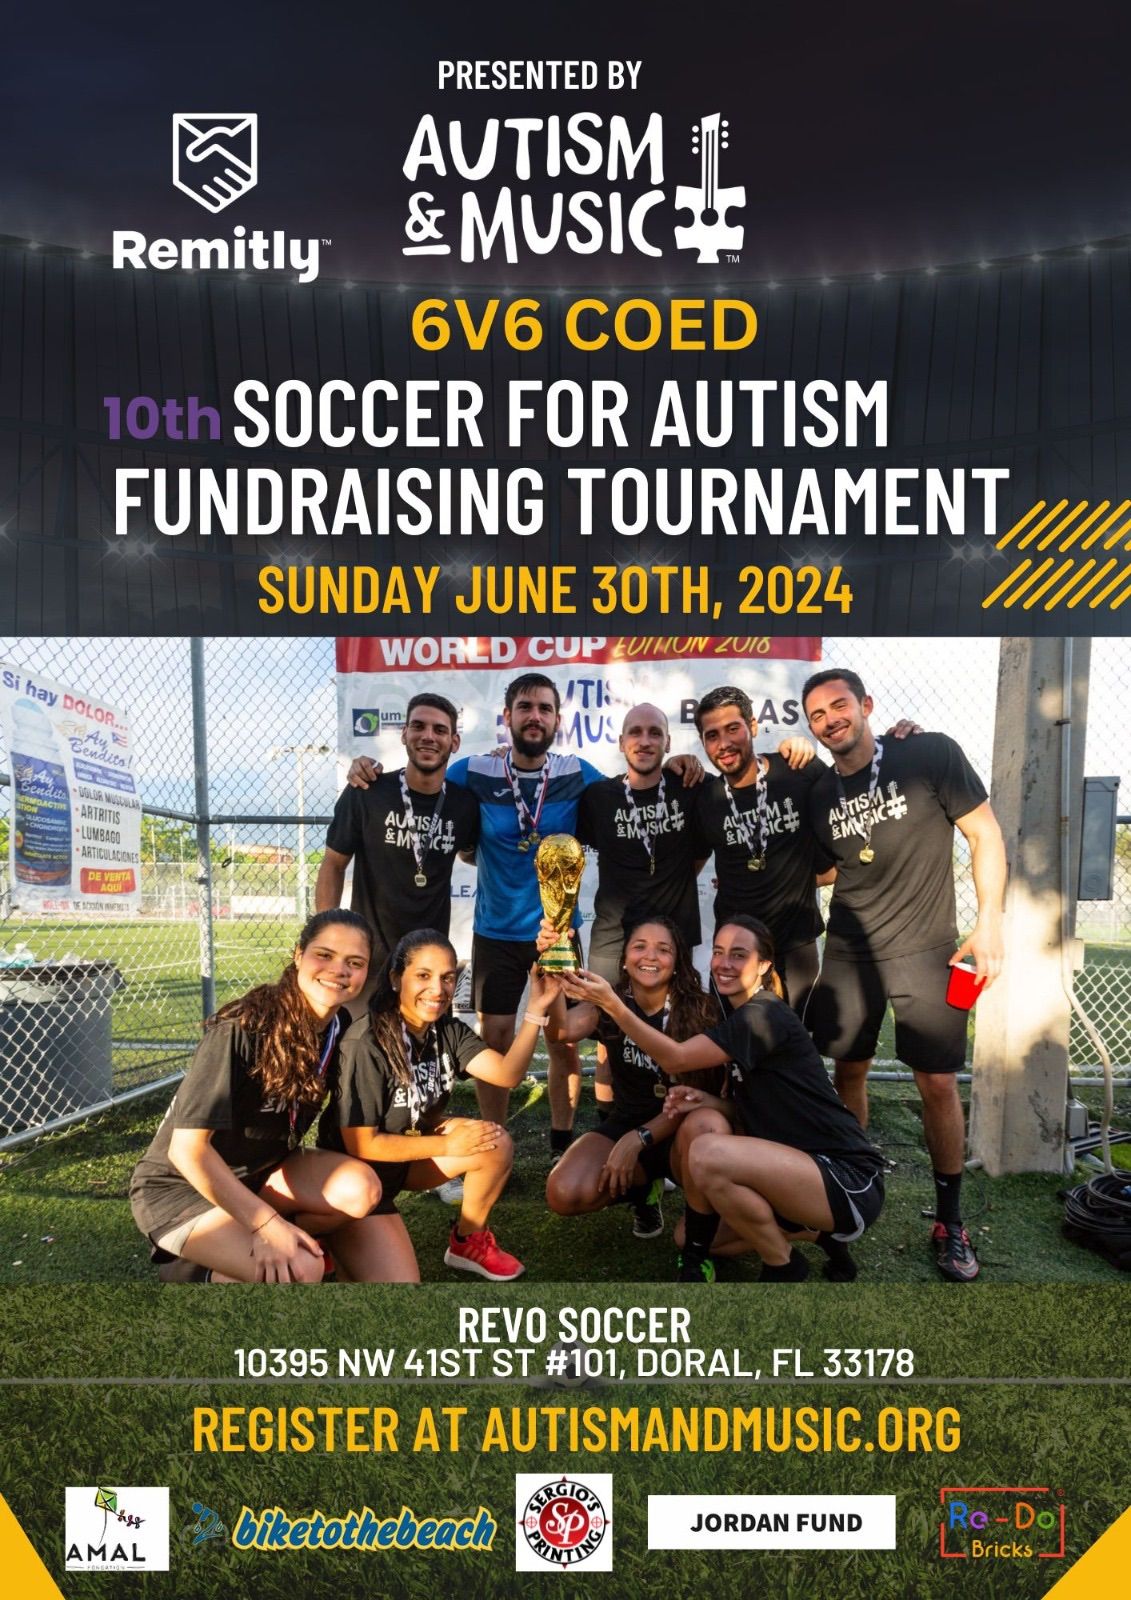 10th Soccer 4 Autism Fundraising Tournament (Miami, FL)